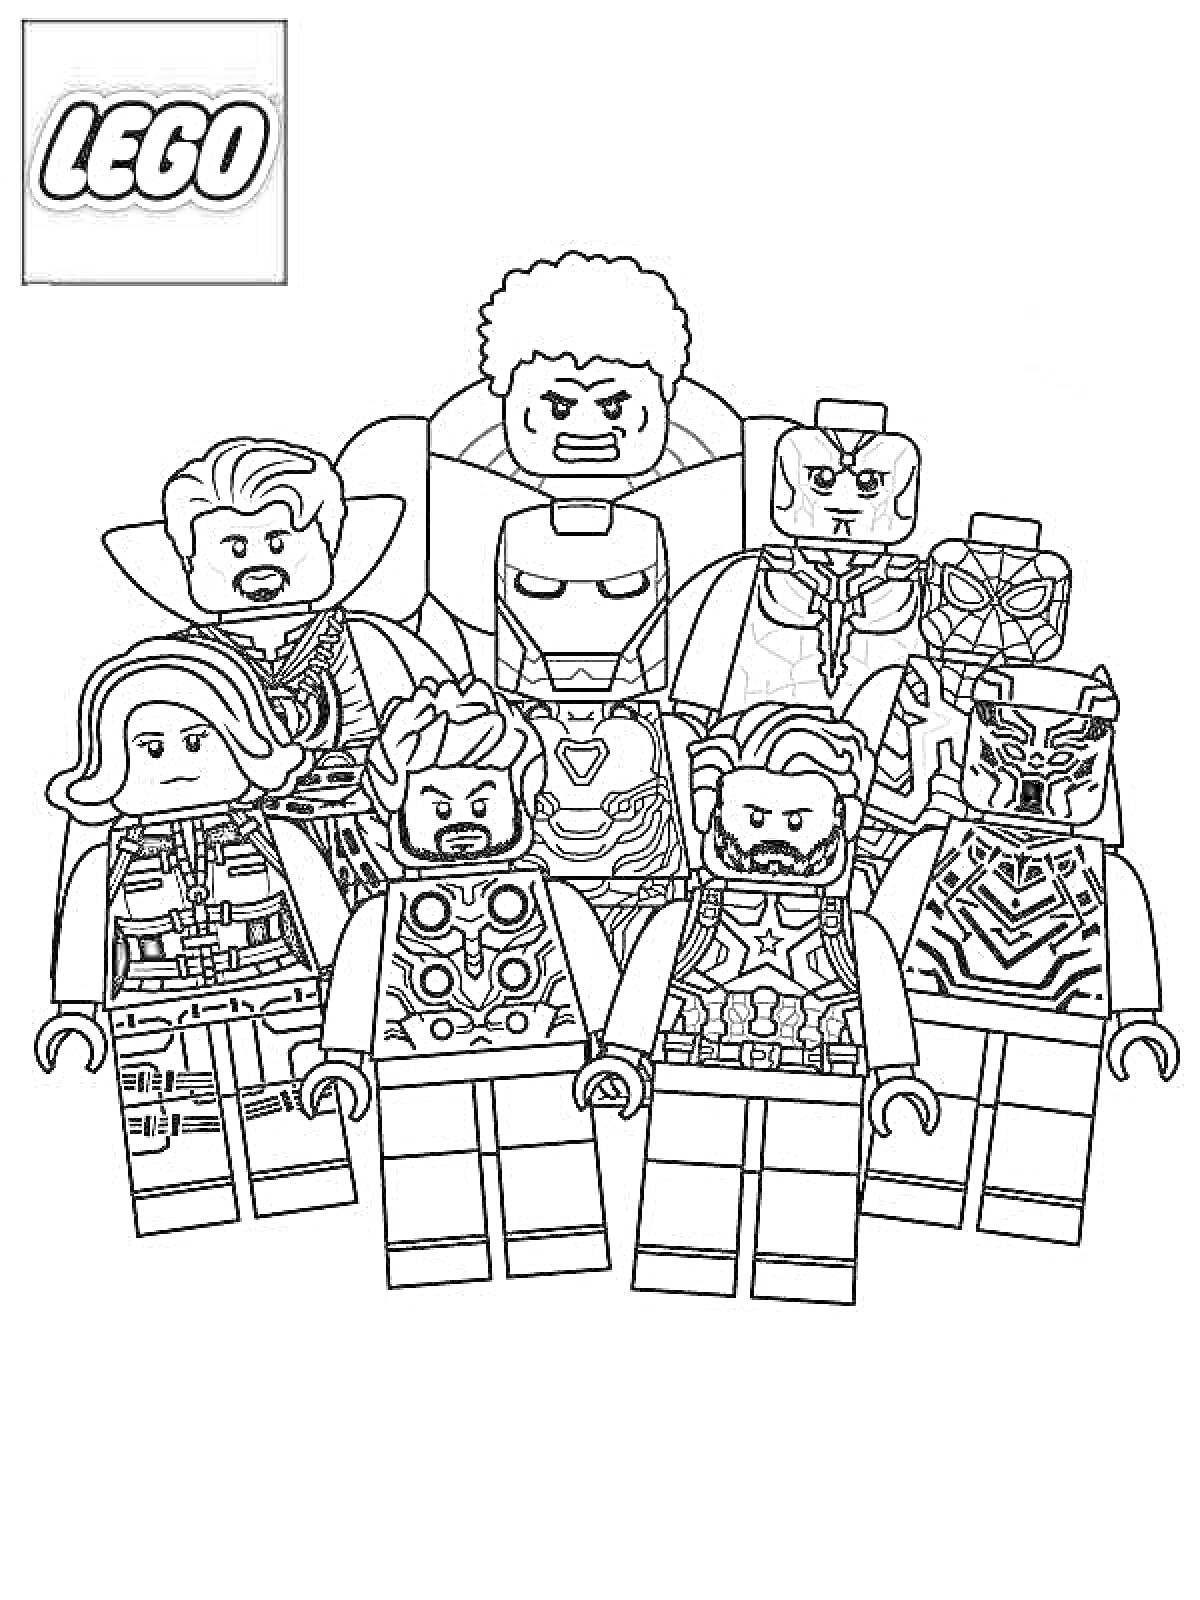 Раскраска Лего мстители - Железный человек, Капитан Америка, Чёрная Пантера, Чёрная Вдова, Тор, Вижн, Доктор Стрэндж и Халк